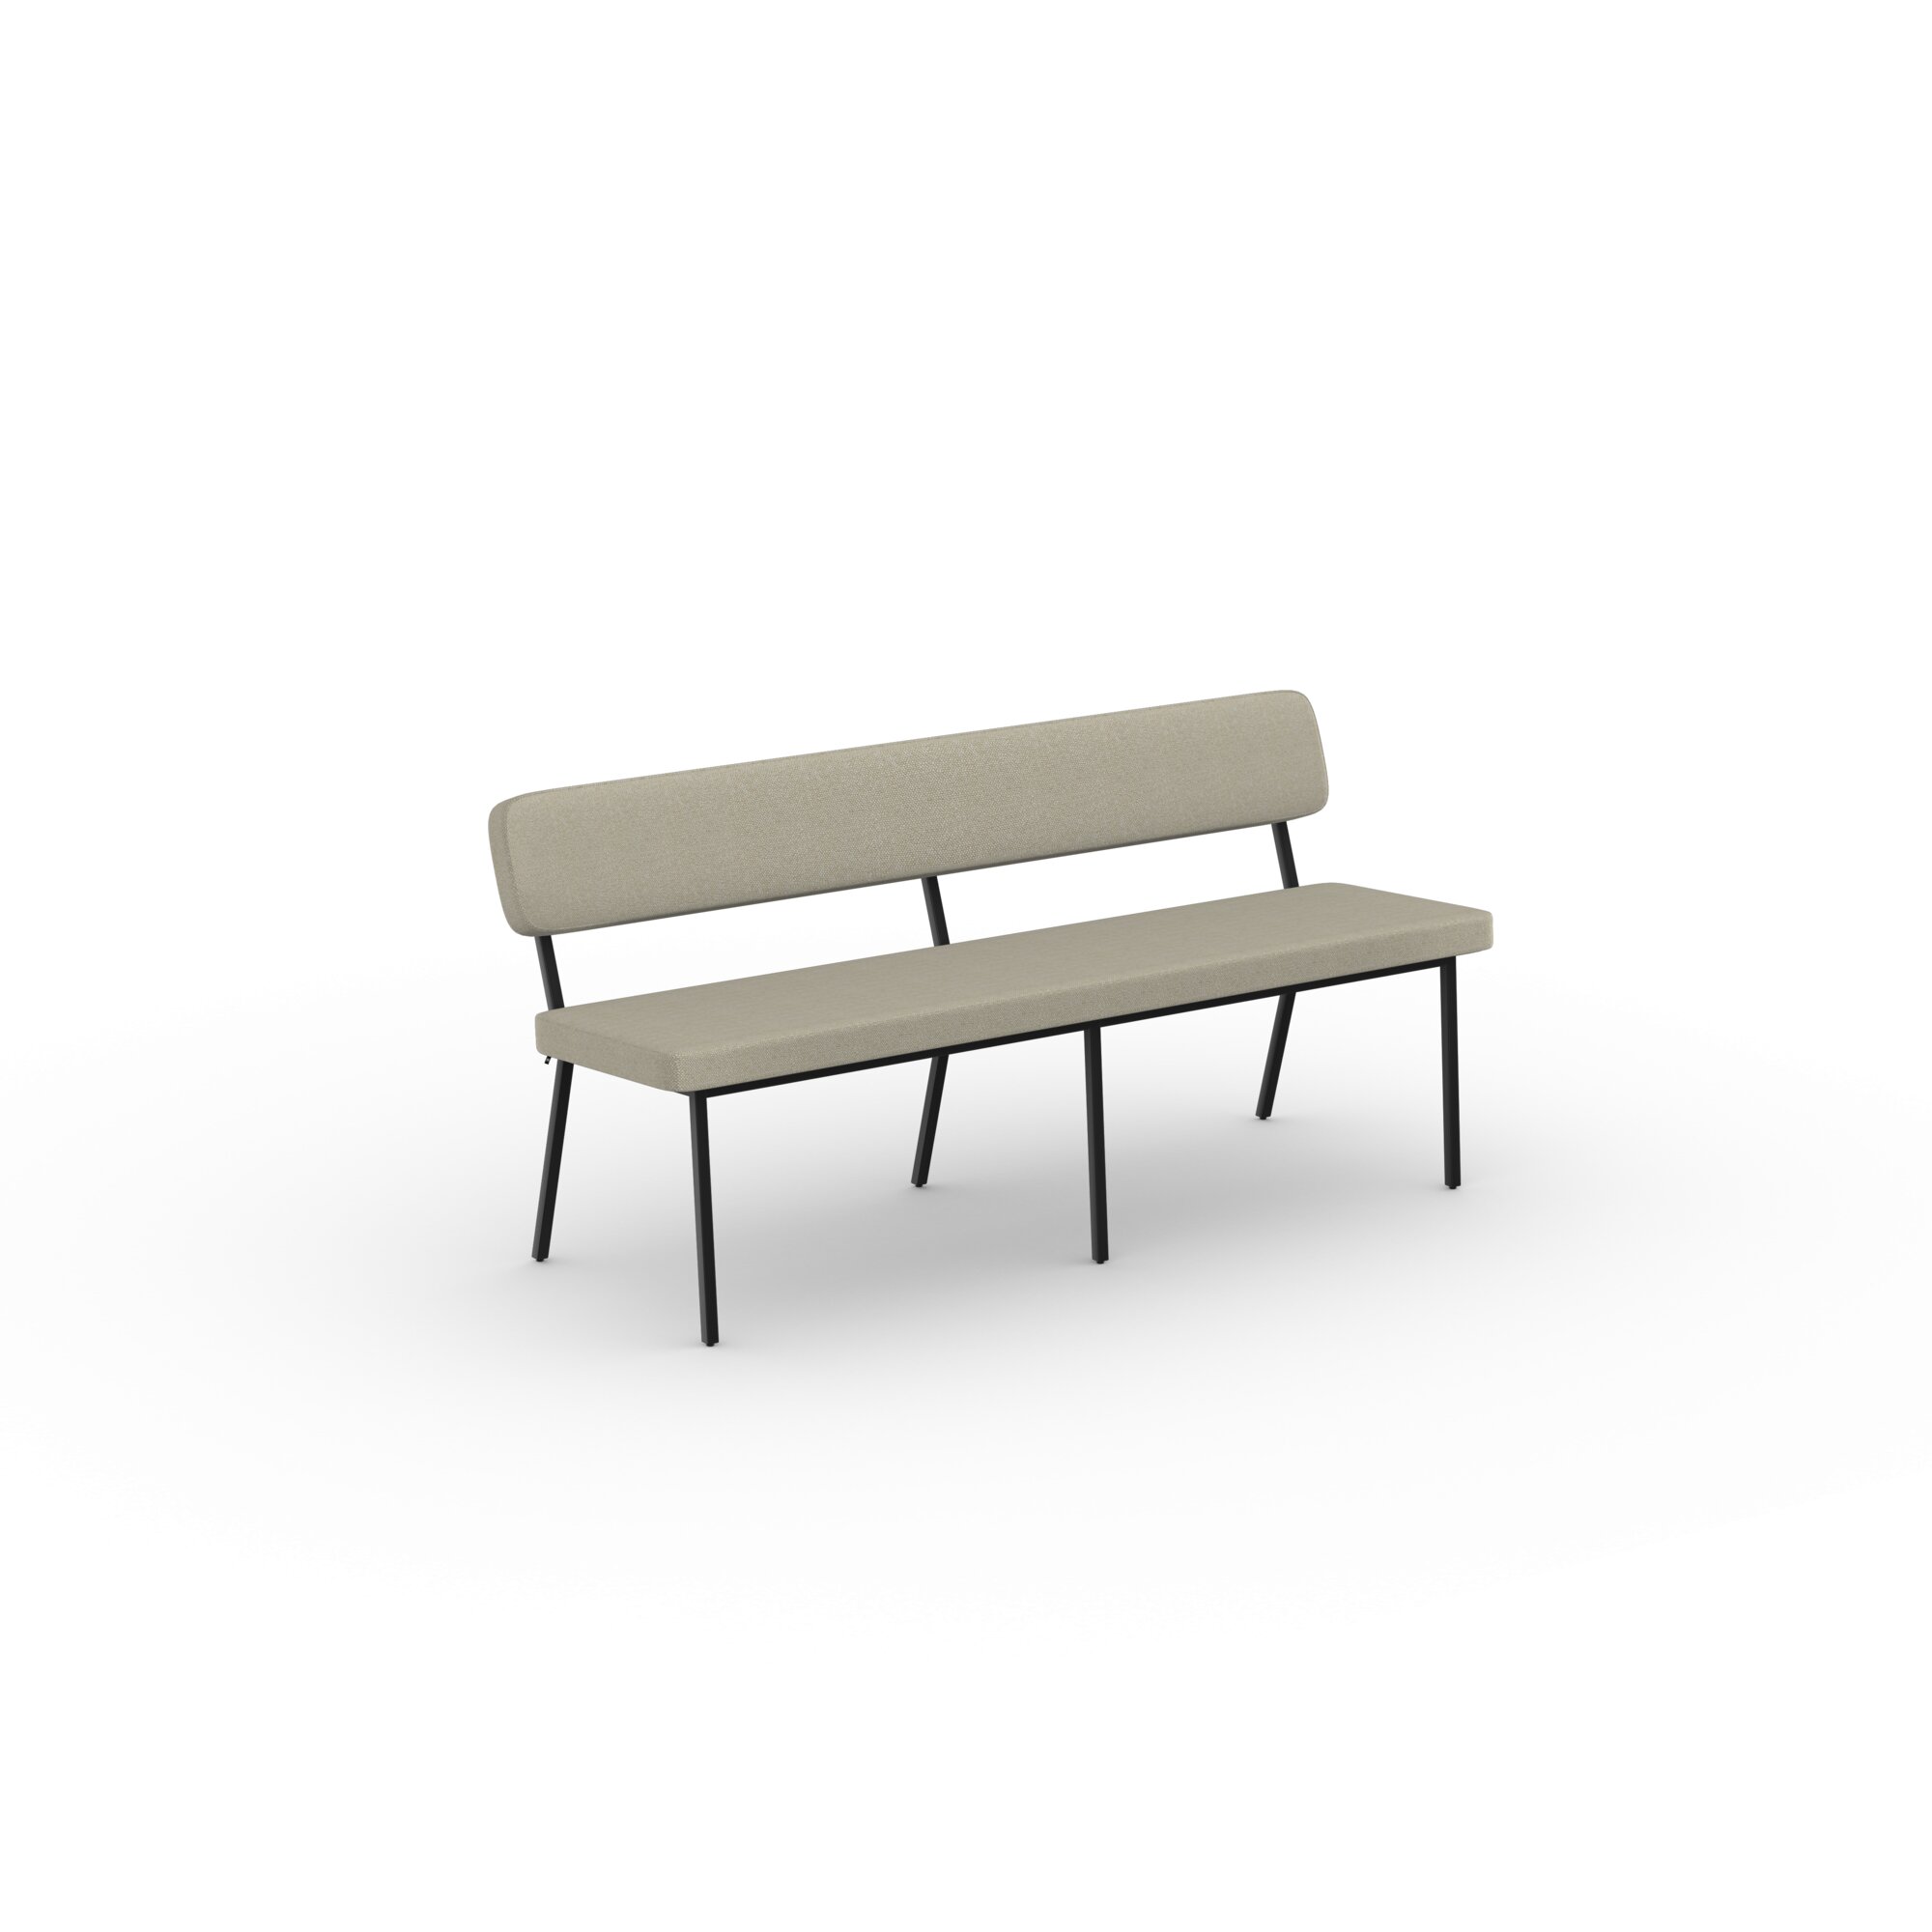 Design modern dining chair | Coode dining bench 180 Beige hallingdal65 220 | Studio HENK| 